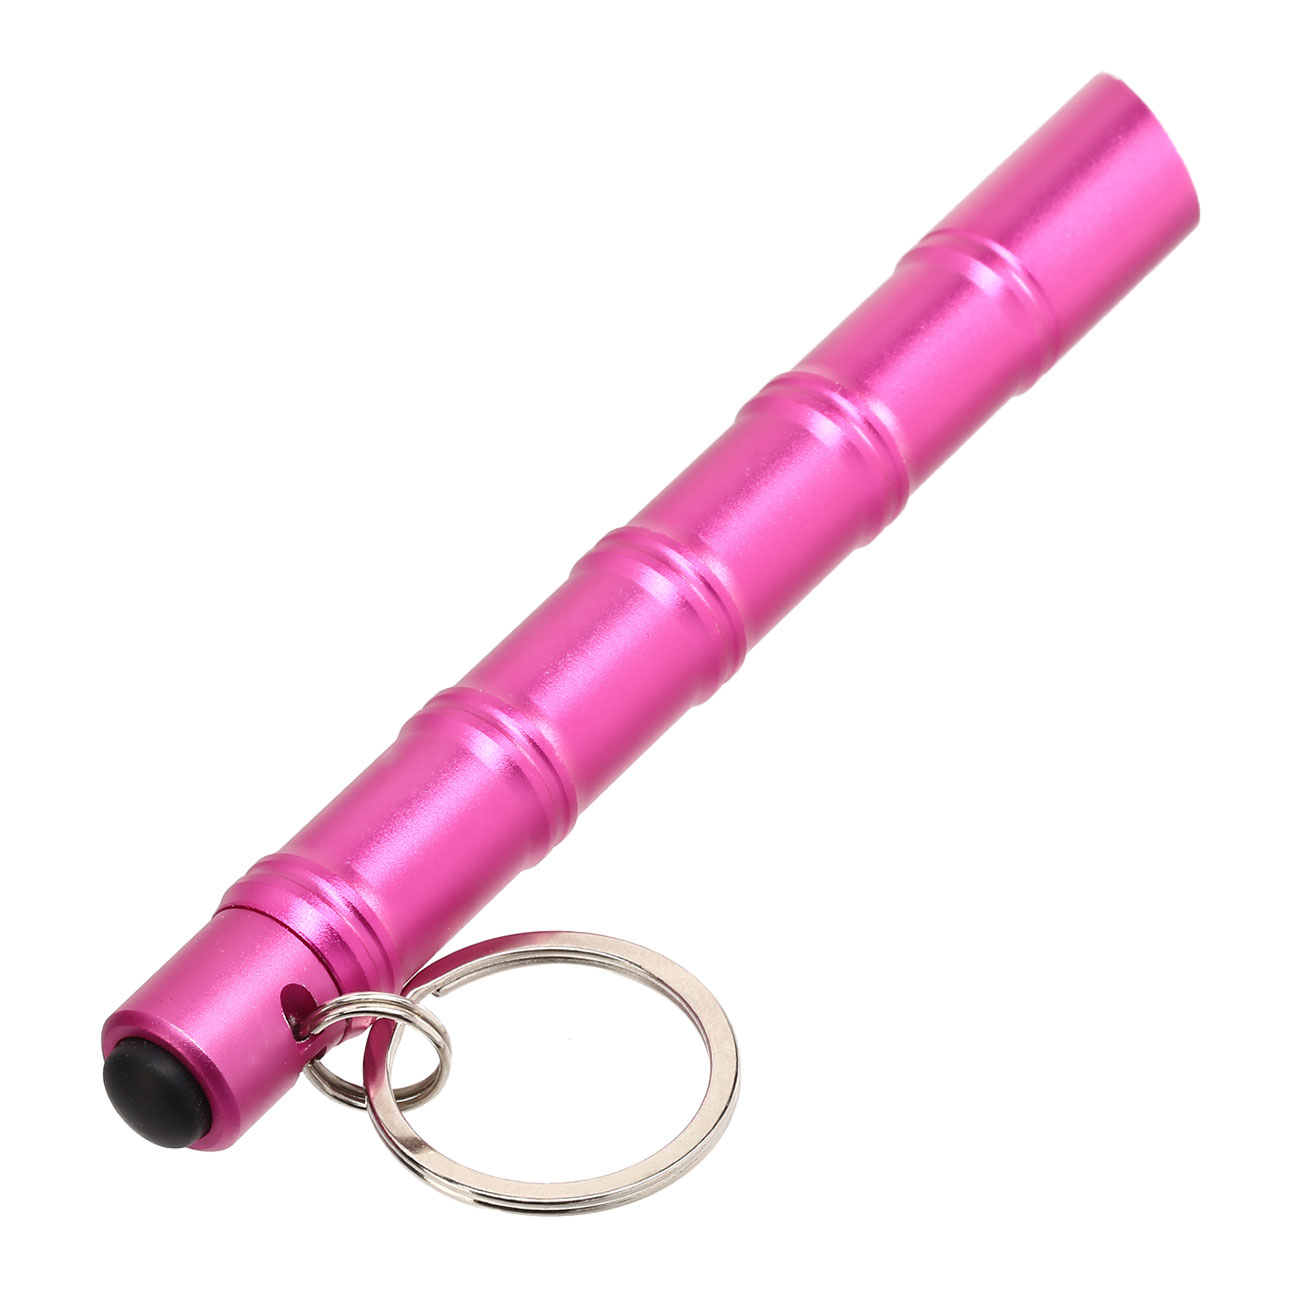 Kubotan Light Defender mit integrieter LED-Taschenlampe und Schlüsselring pink Bild 2